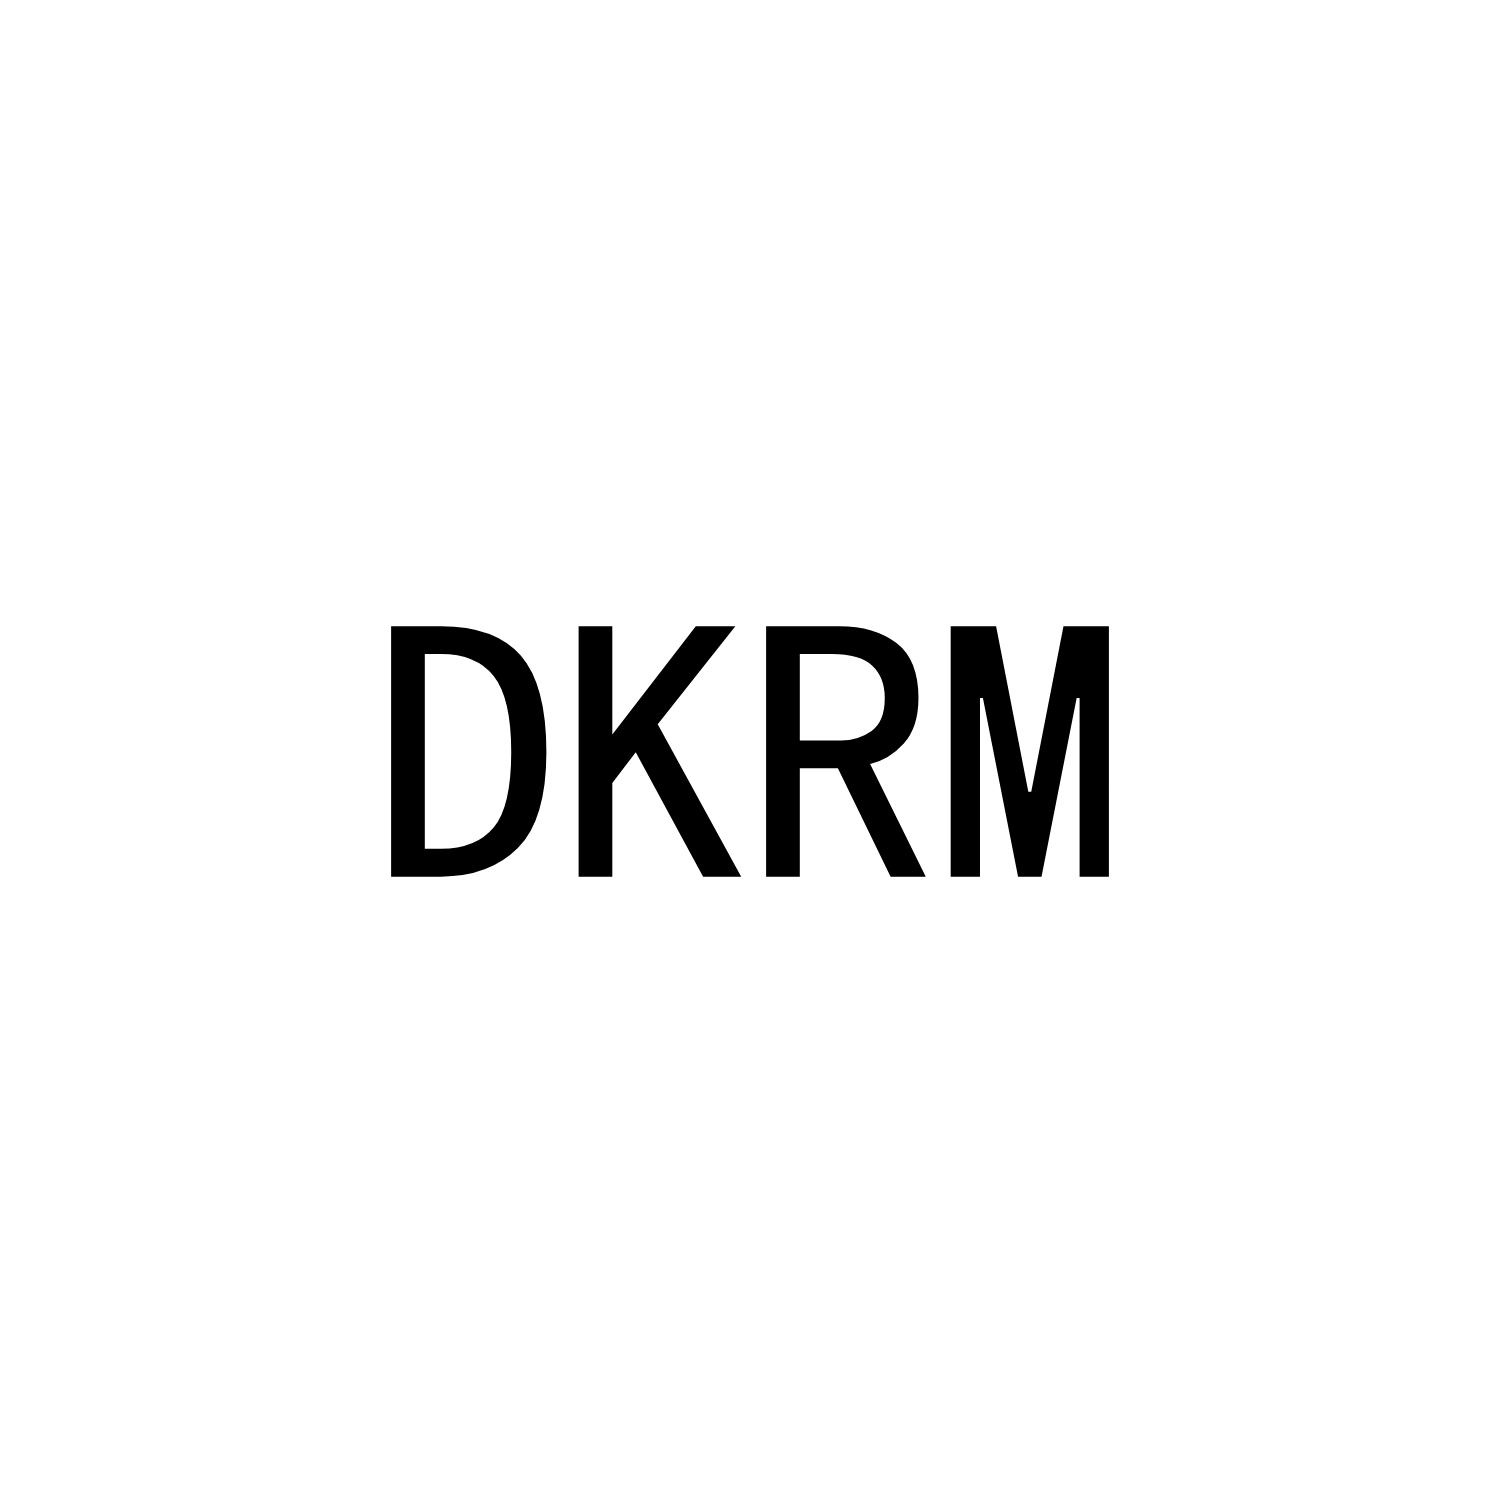 DKRM